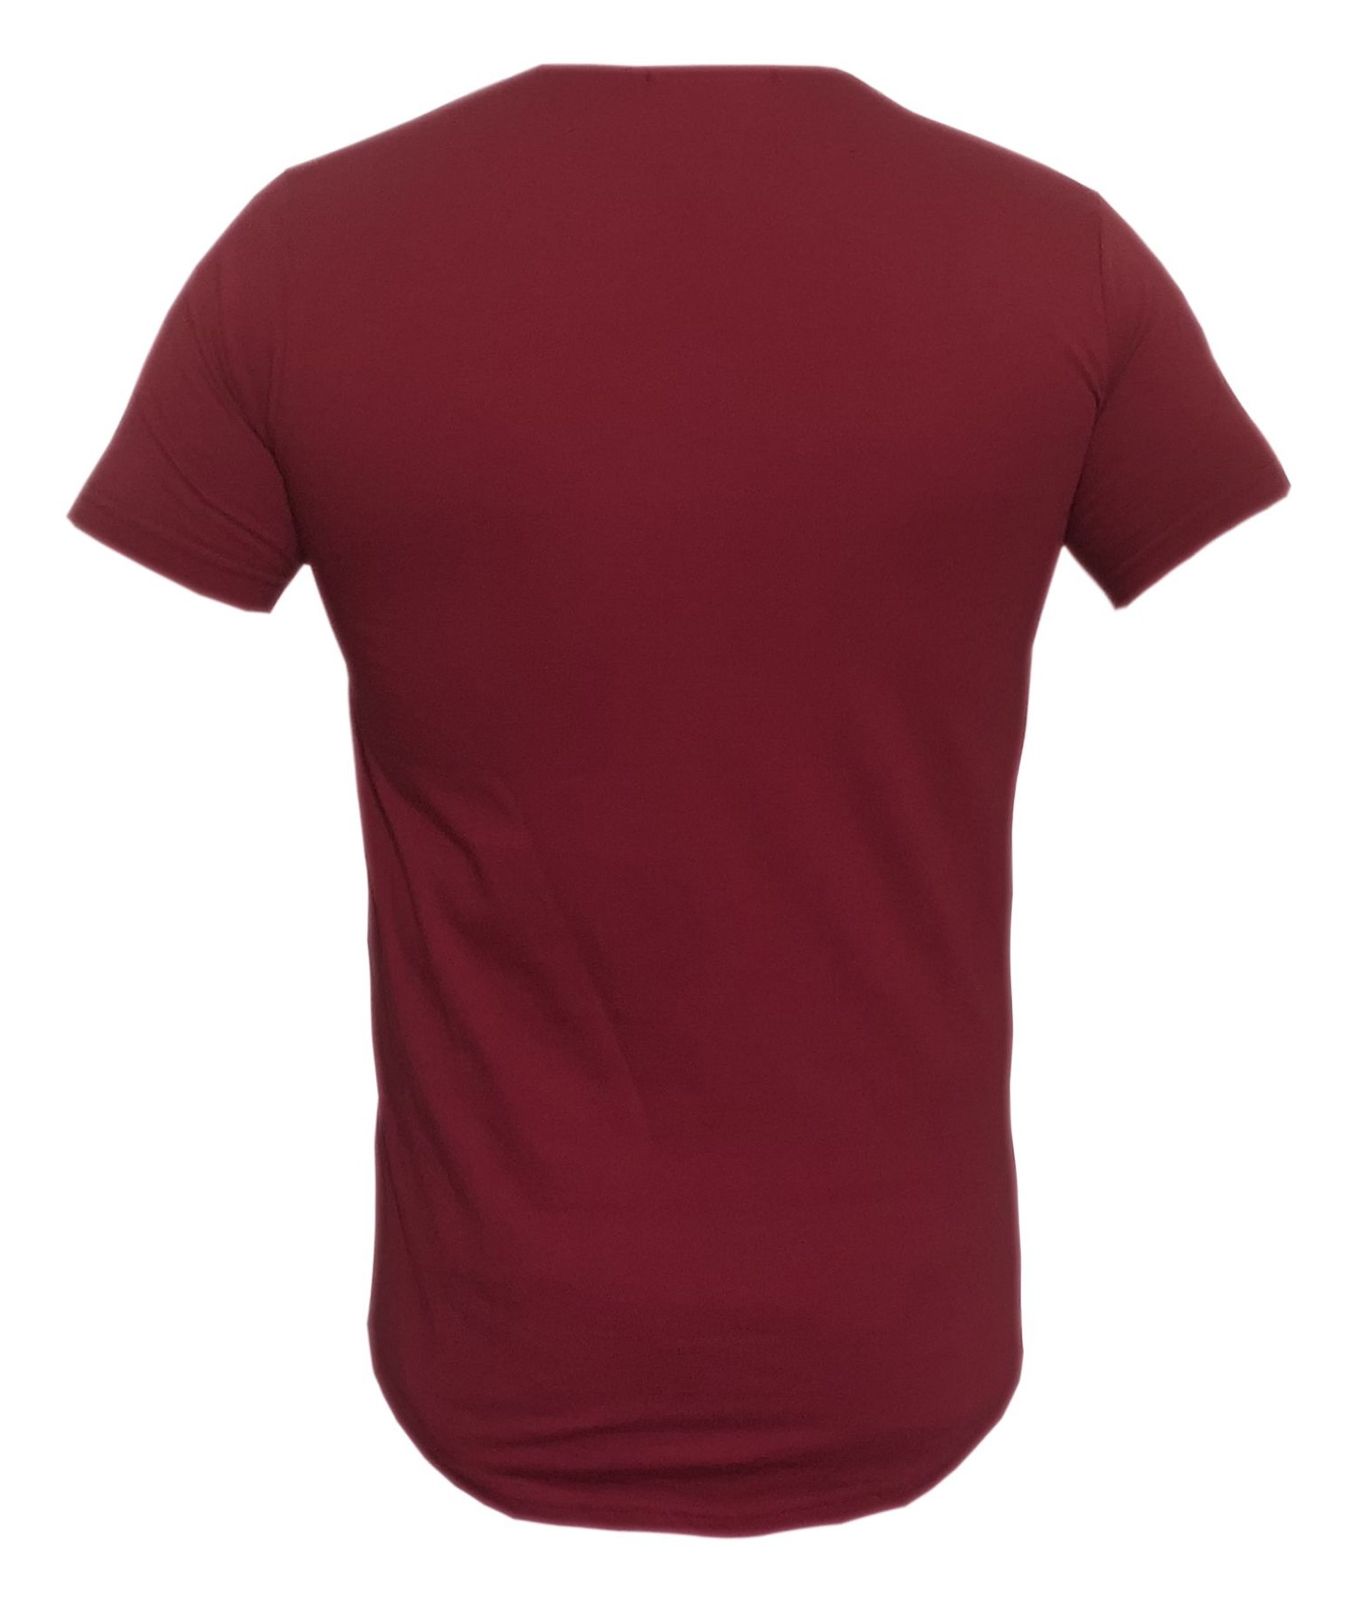 تی شرت مردانه کد M01 رنگ قرمز